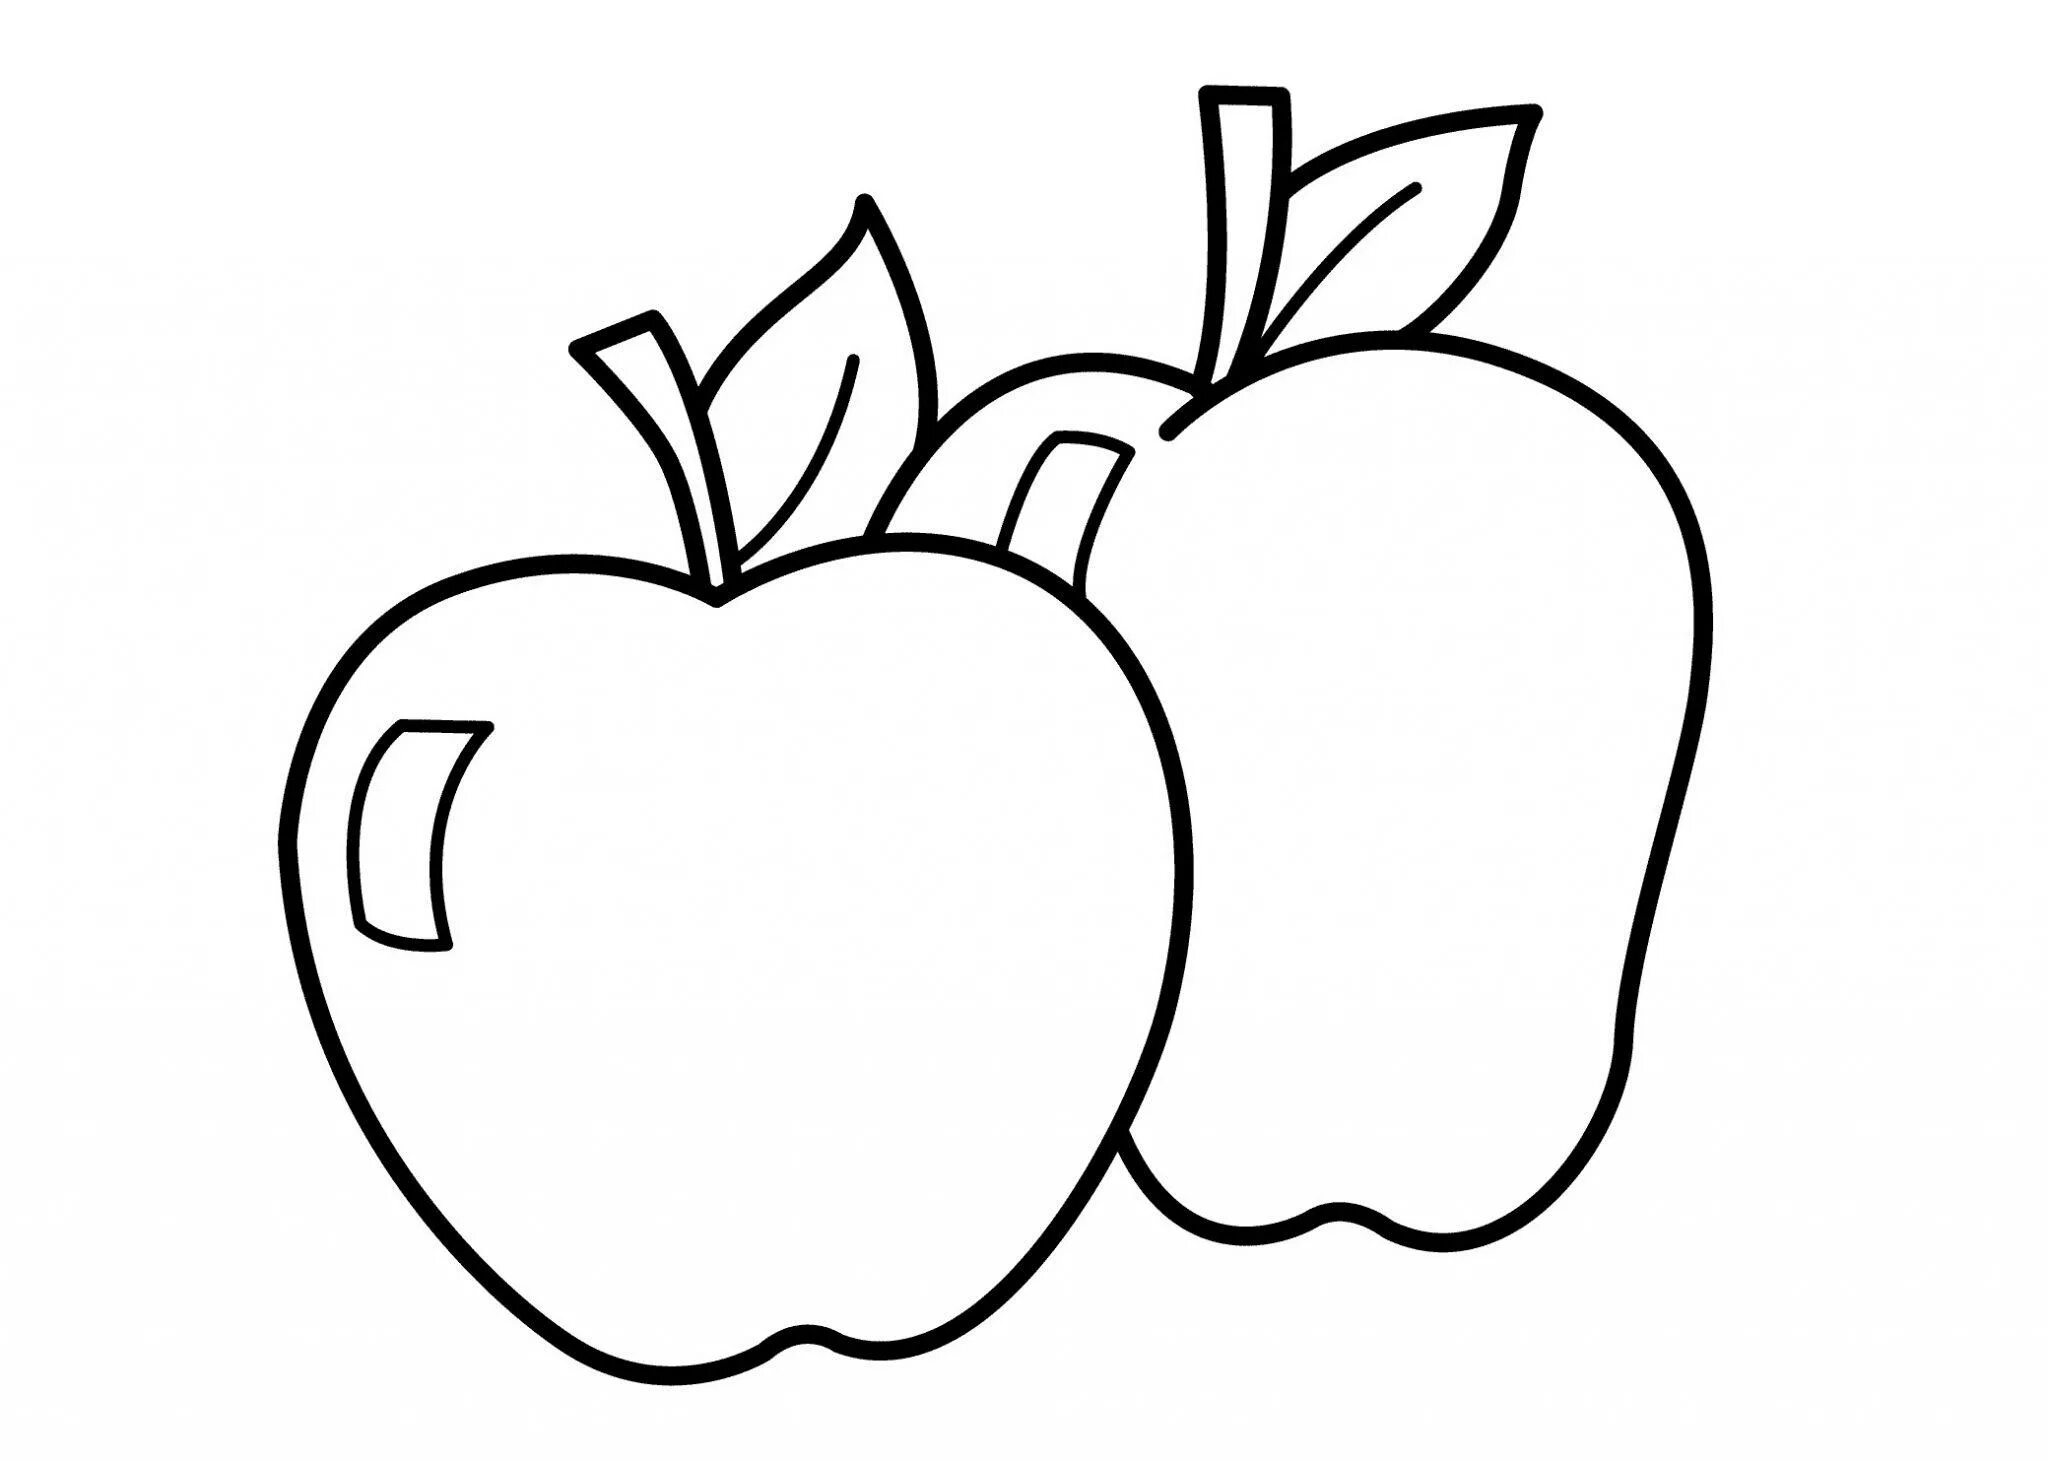 Раскраска 3 яблока. Яблоко раскраска для детей. Яблоко раскраска для малышей. Раскраска яблоко для детей 2-3 лет. Фрукты раскраска для детей.